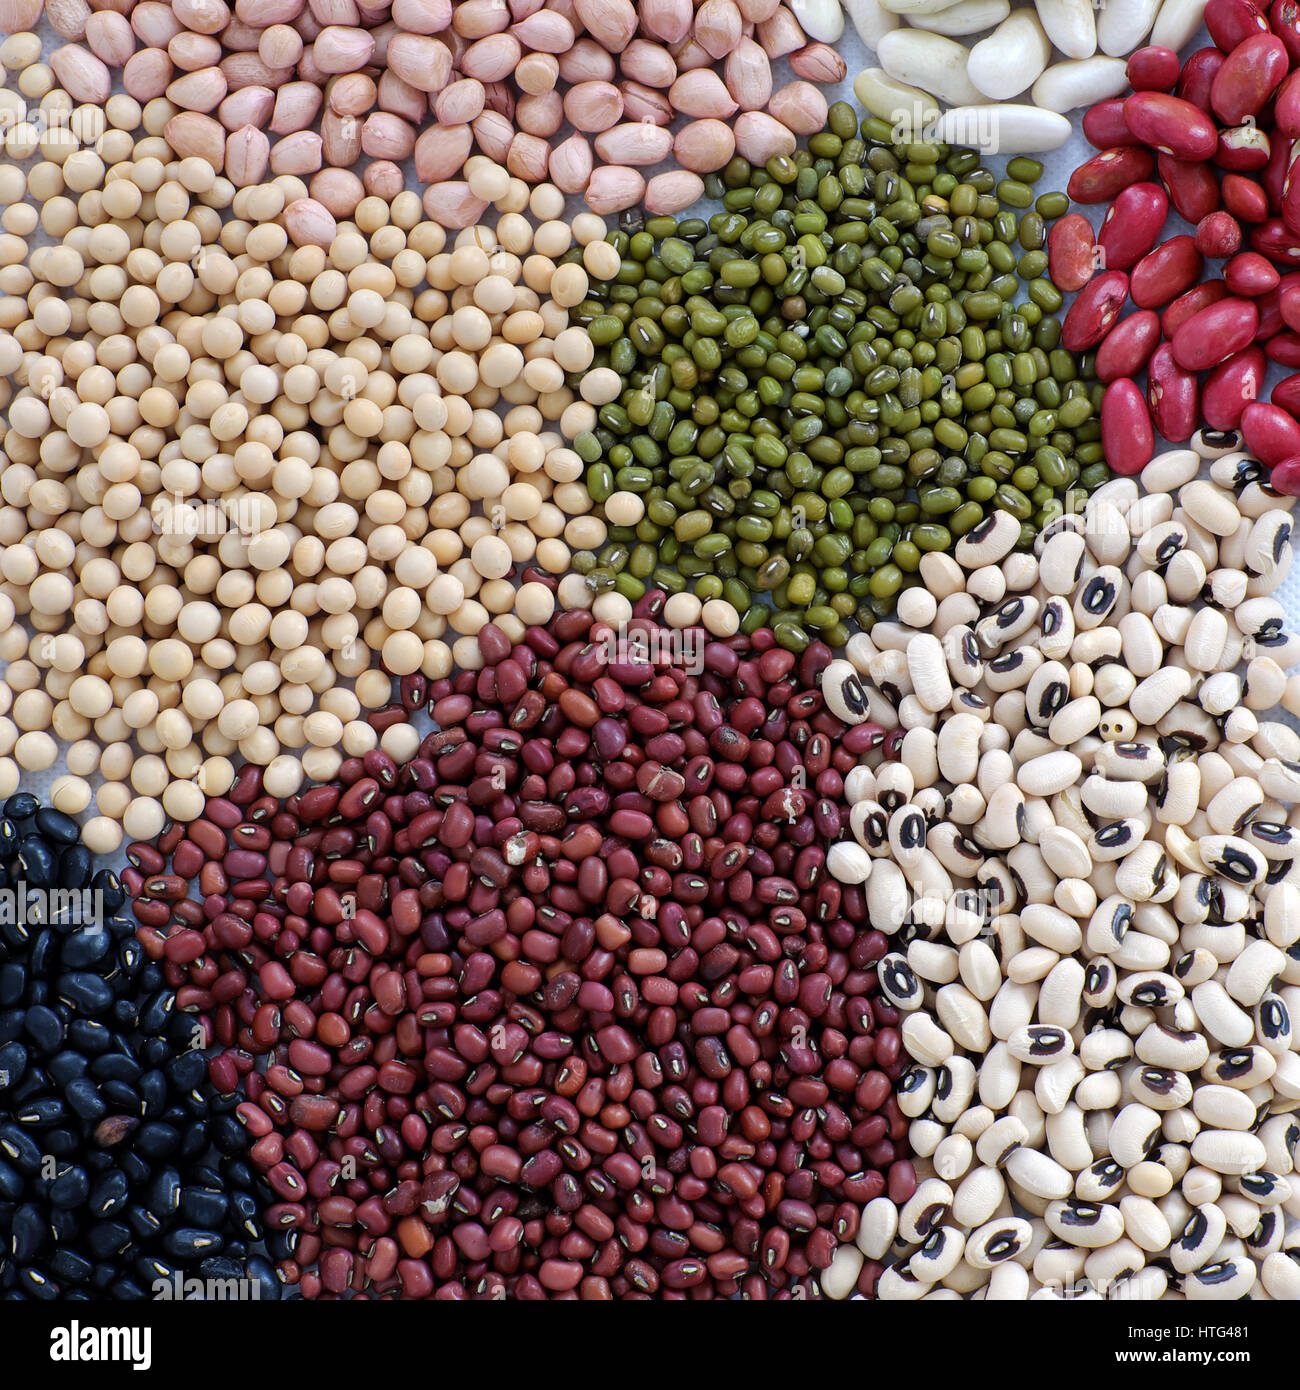 Prélèvement de bean sur fond blanc, le Vietnam produit de l'agriculture, l'alimentation en fibres faire réduire le taux de cholestérol, prévenir le cancer, de stabilité, de sucre dans le sang Banque D'Images